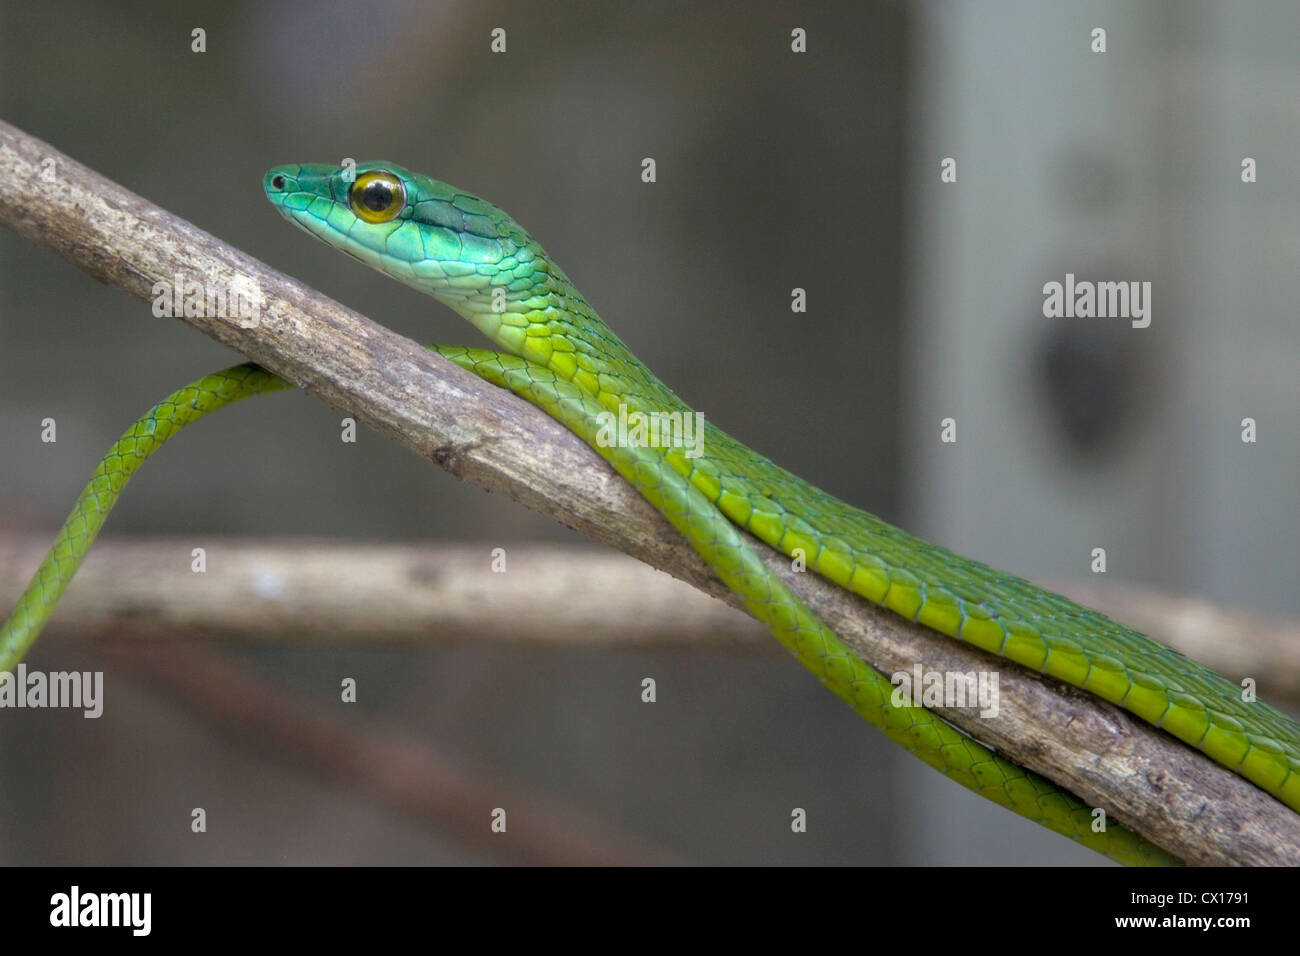 Green Tree Snake esperando en una rama, Costa Rica. Foto de stock